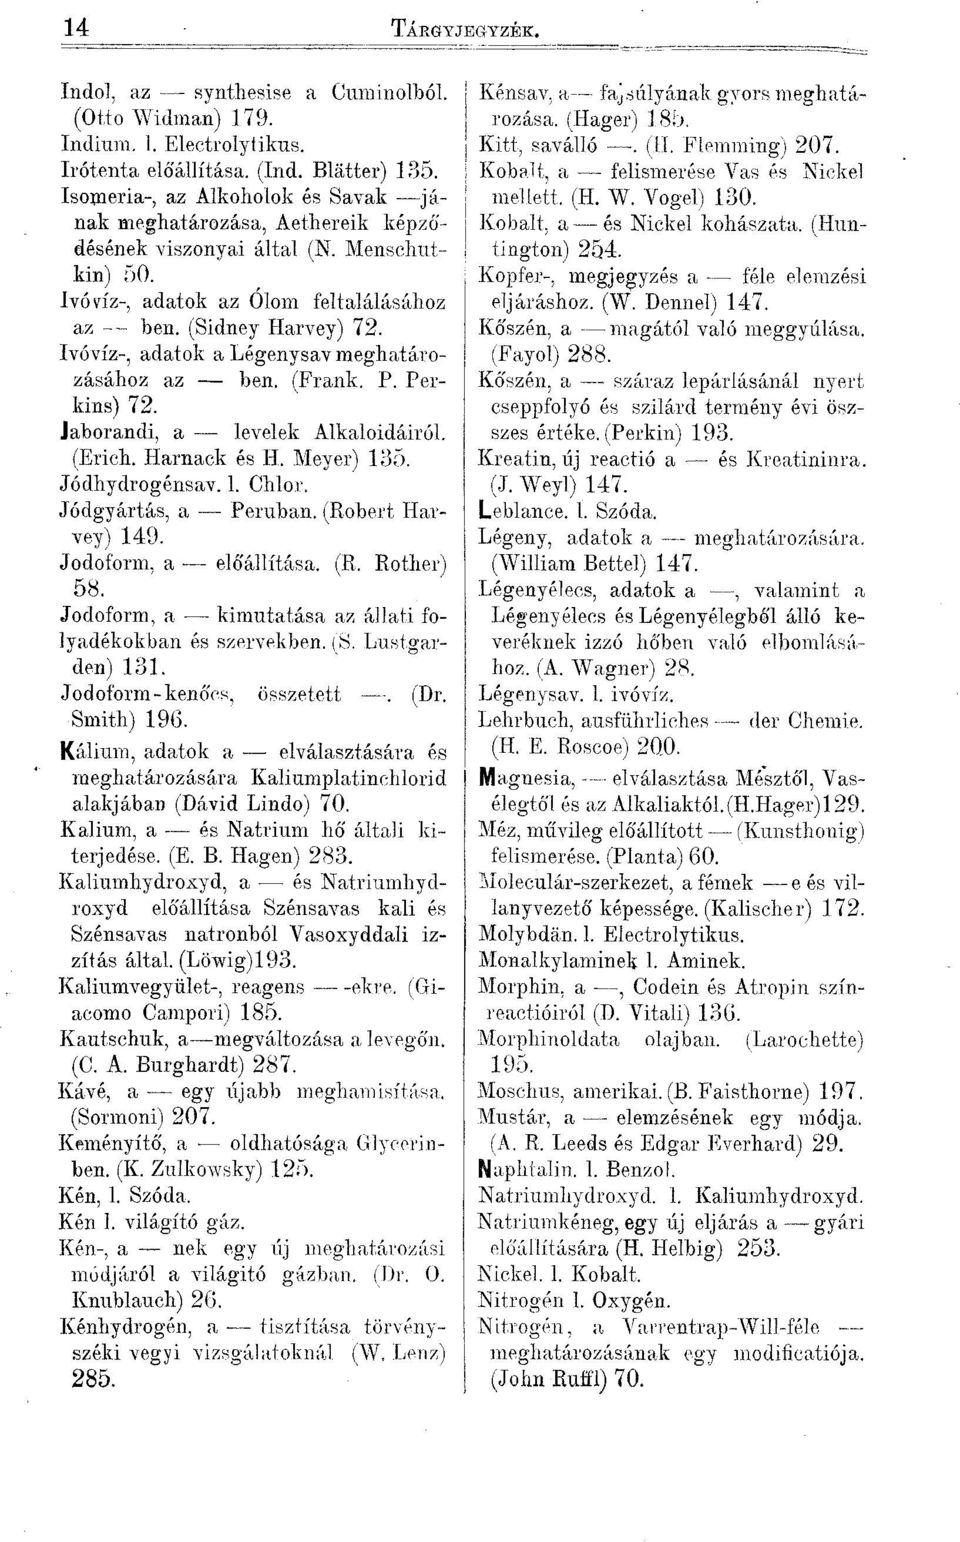 Ivóvíz-, adatok a Légenysav meghatározásához az ben. (Frank. P. Perkins) 72. Jaborandi, a levelek Alkaloidáiról. (Erich. Harnack és H. Meyer) 135. Jódhydrogénsav. 1. Chlor. Jódgyártás, a Peruban.